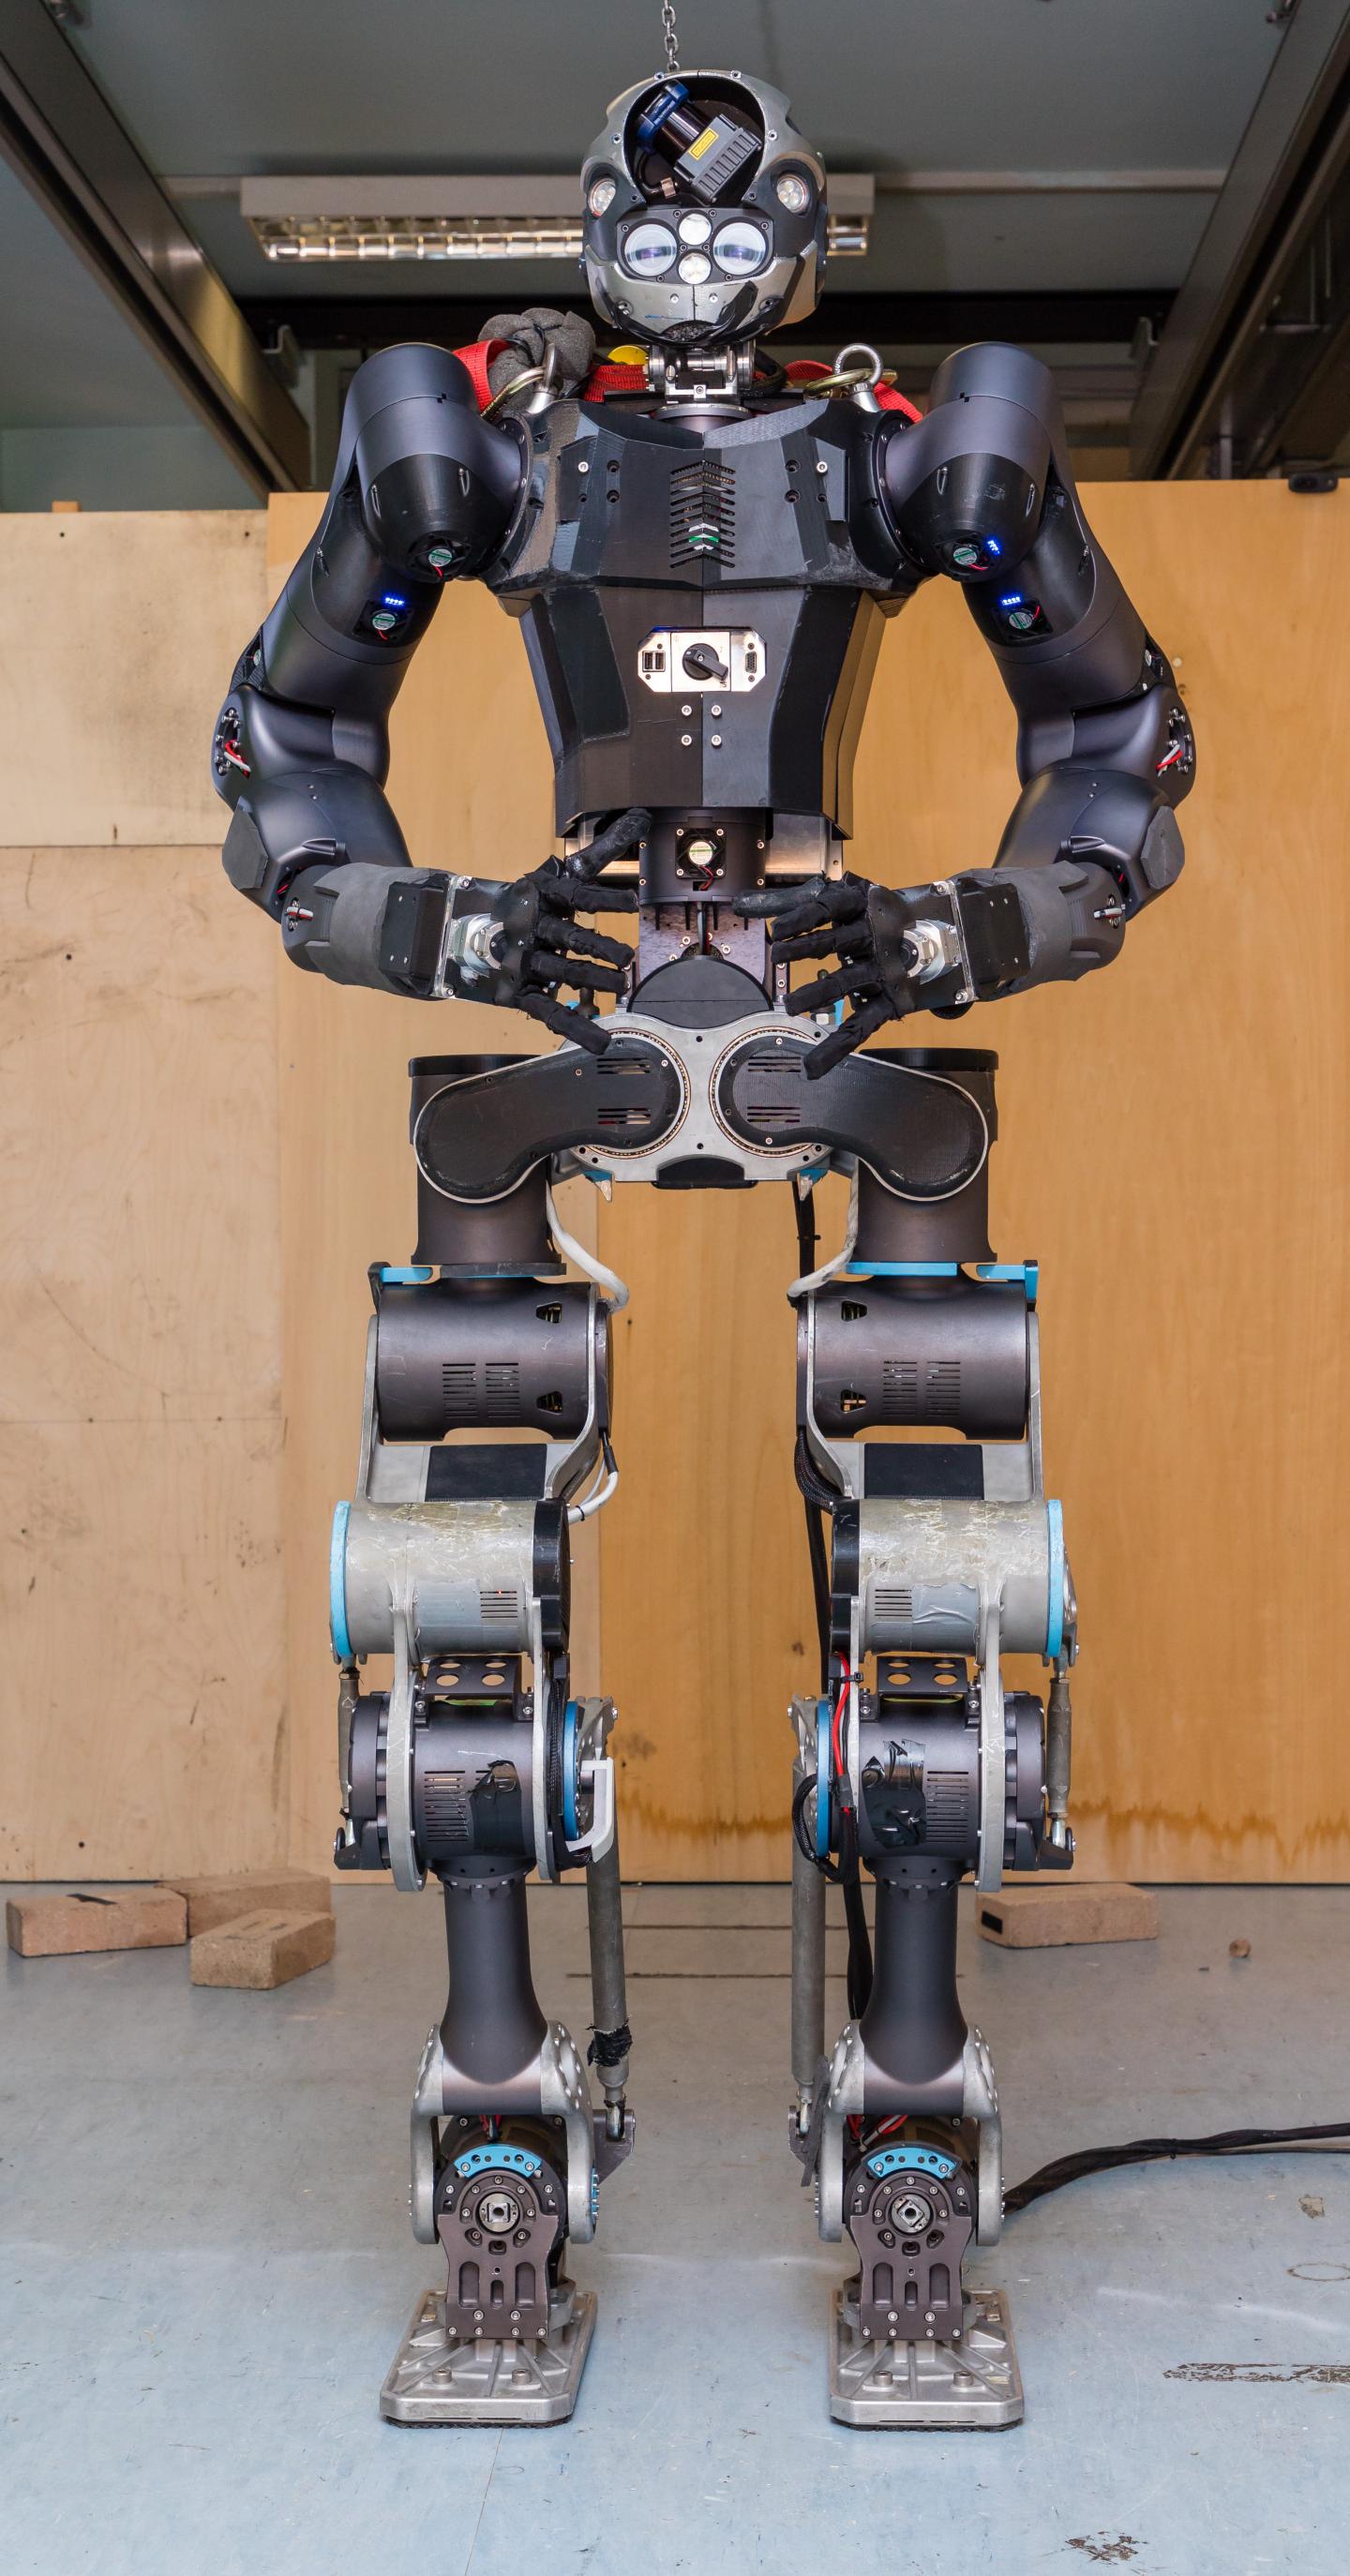 WALK-MAN Humanoid Robot as a Robotic Avatar [image] | EurekAlert ...